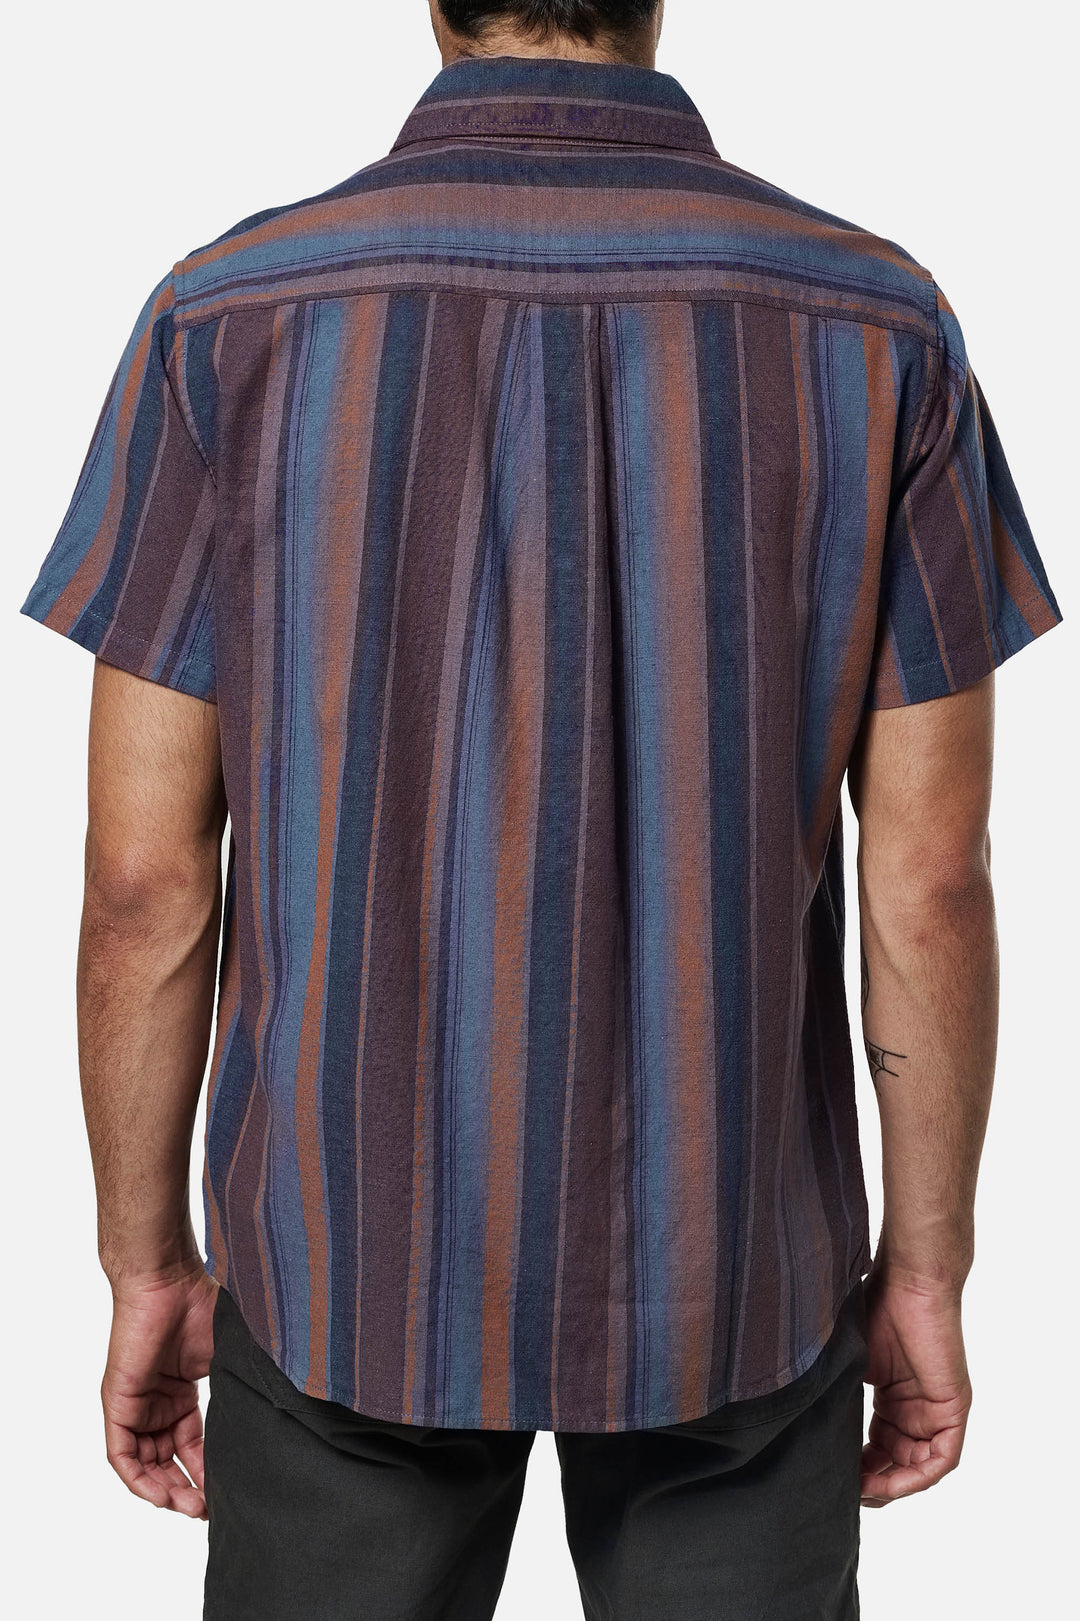 Katin York Shirt - CARAMEL - Sun Diego Boardshop